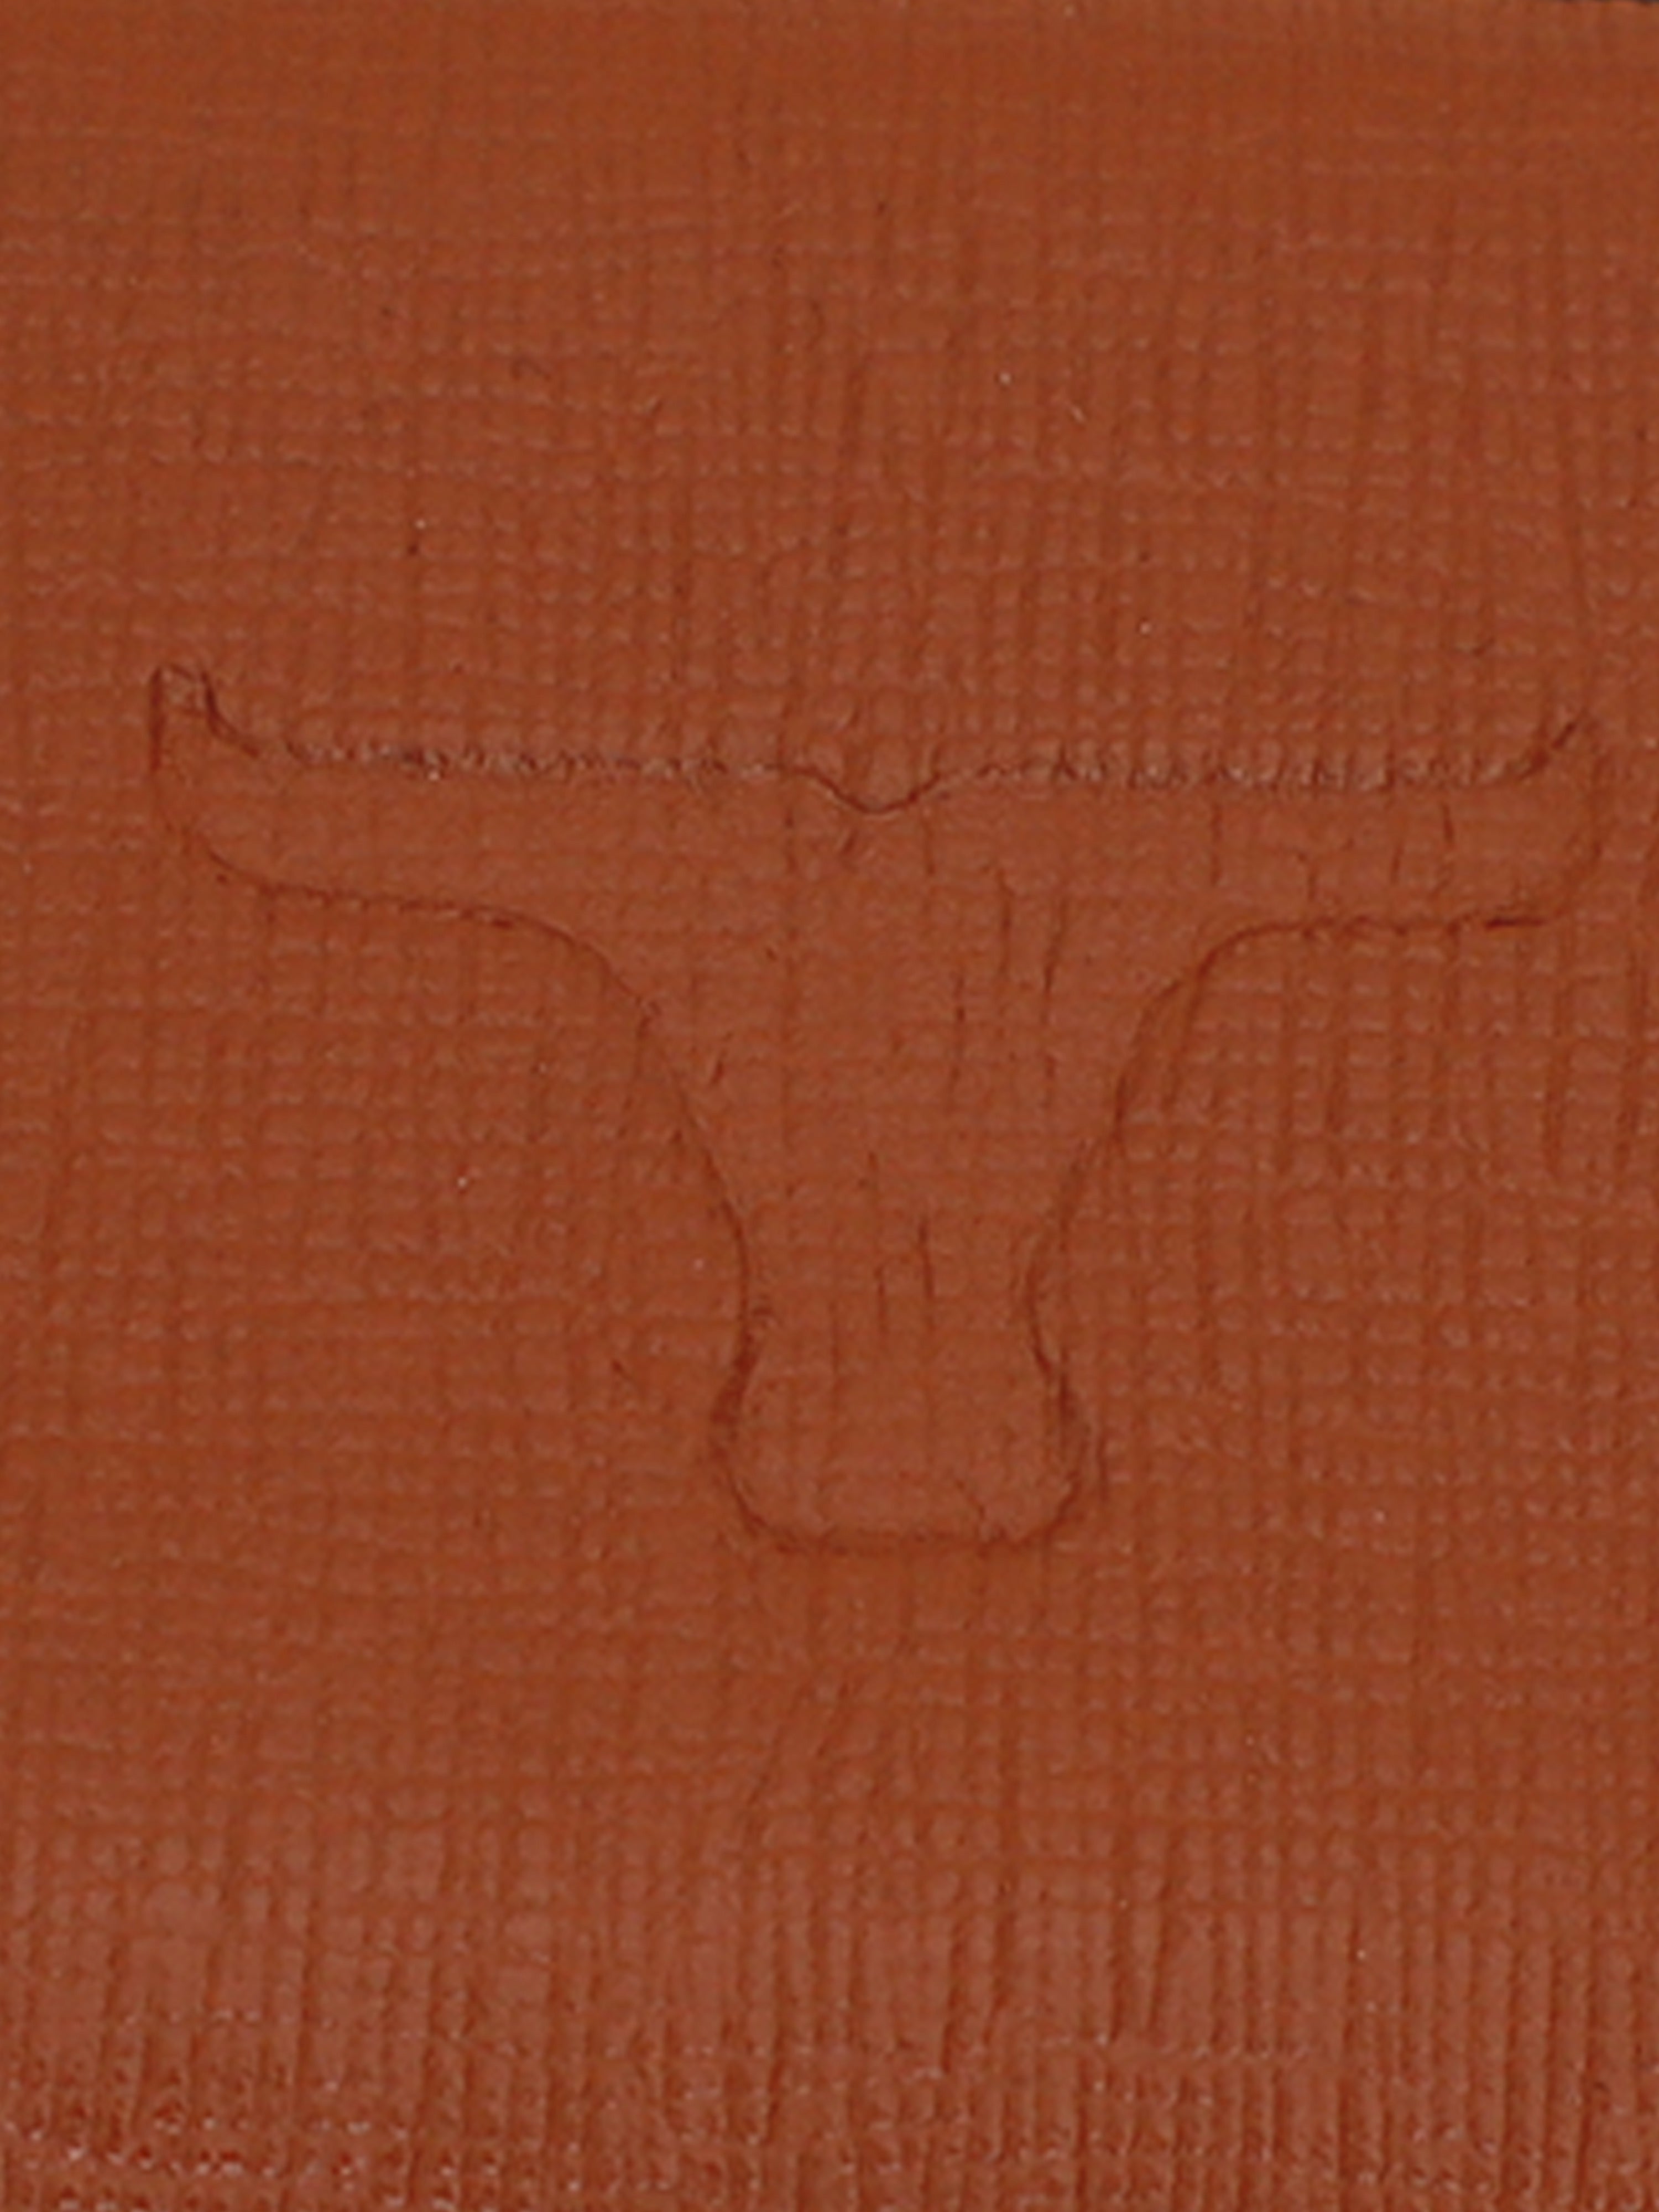 BULCHEE Premium Collection  Men  Leather Belt